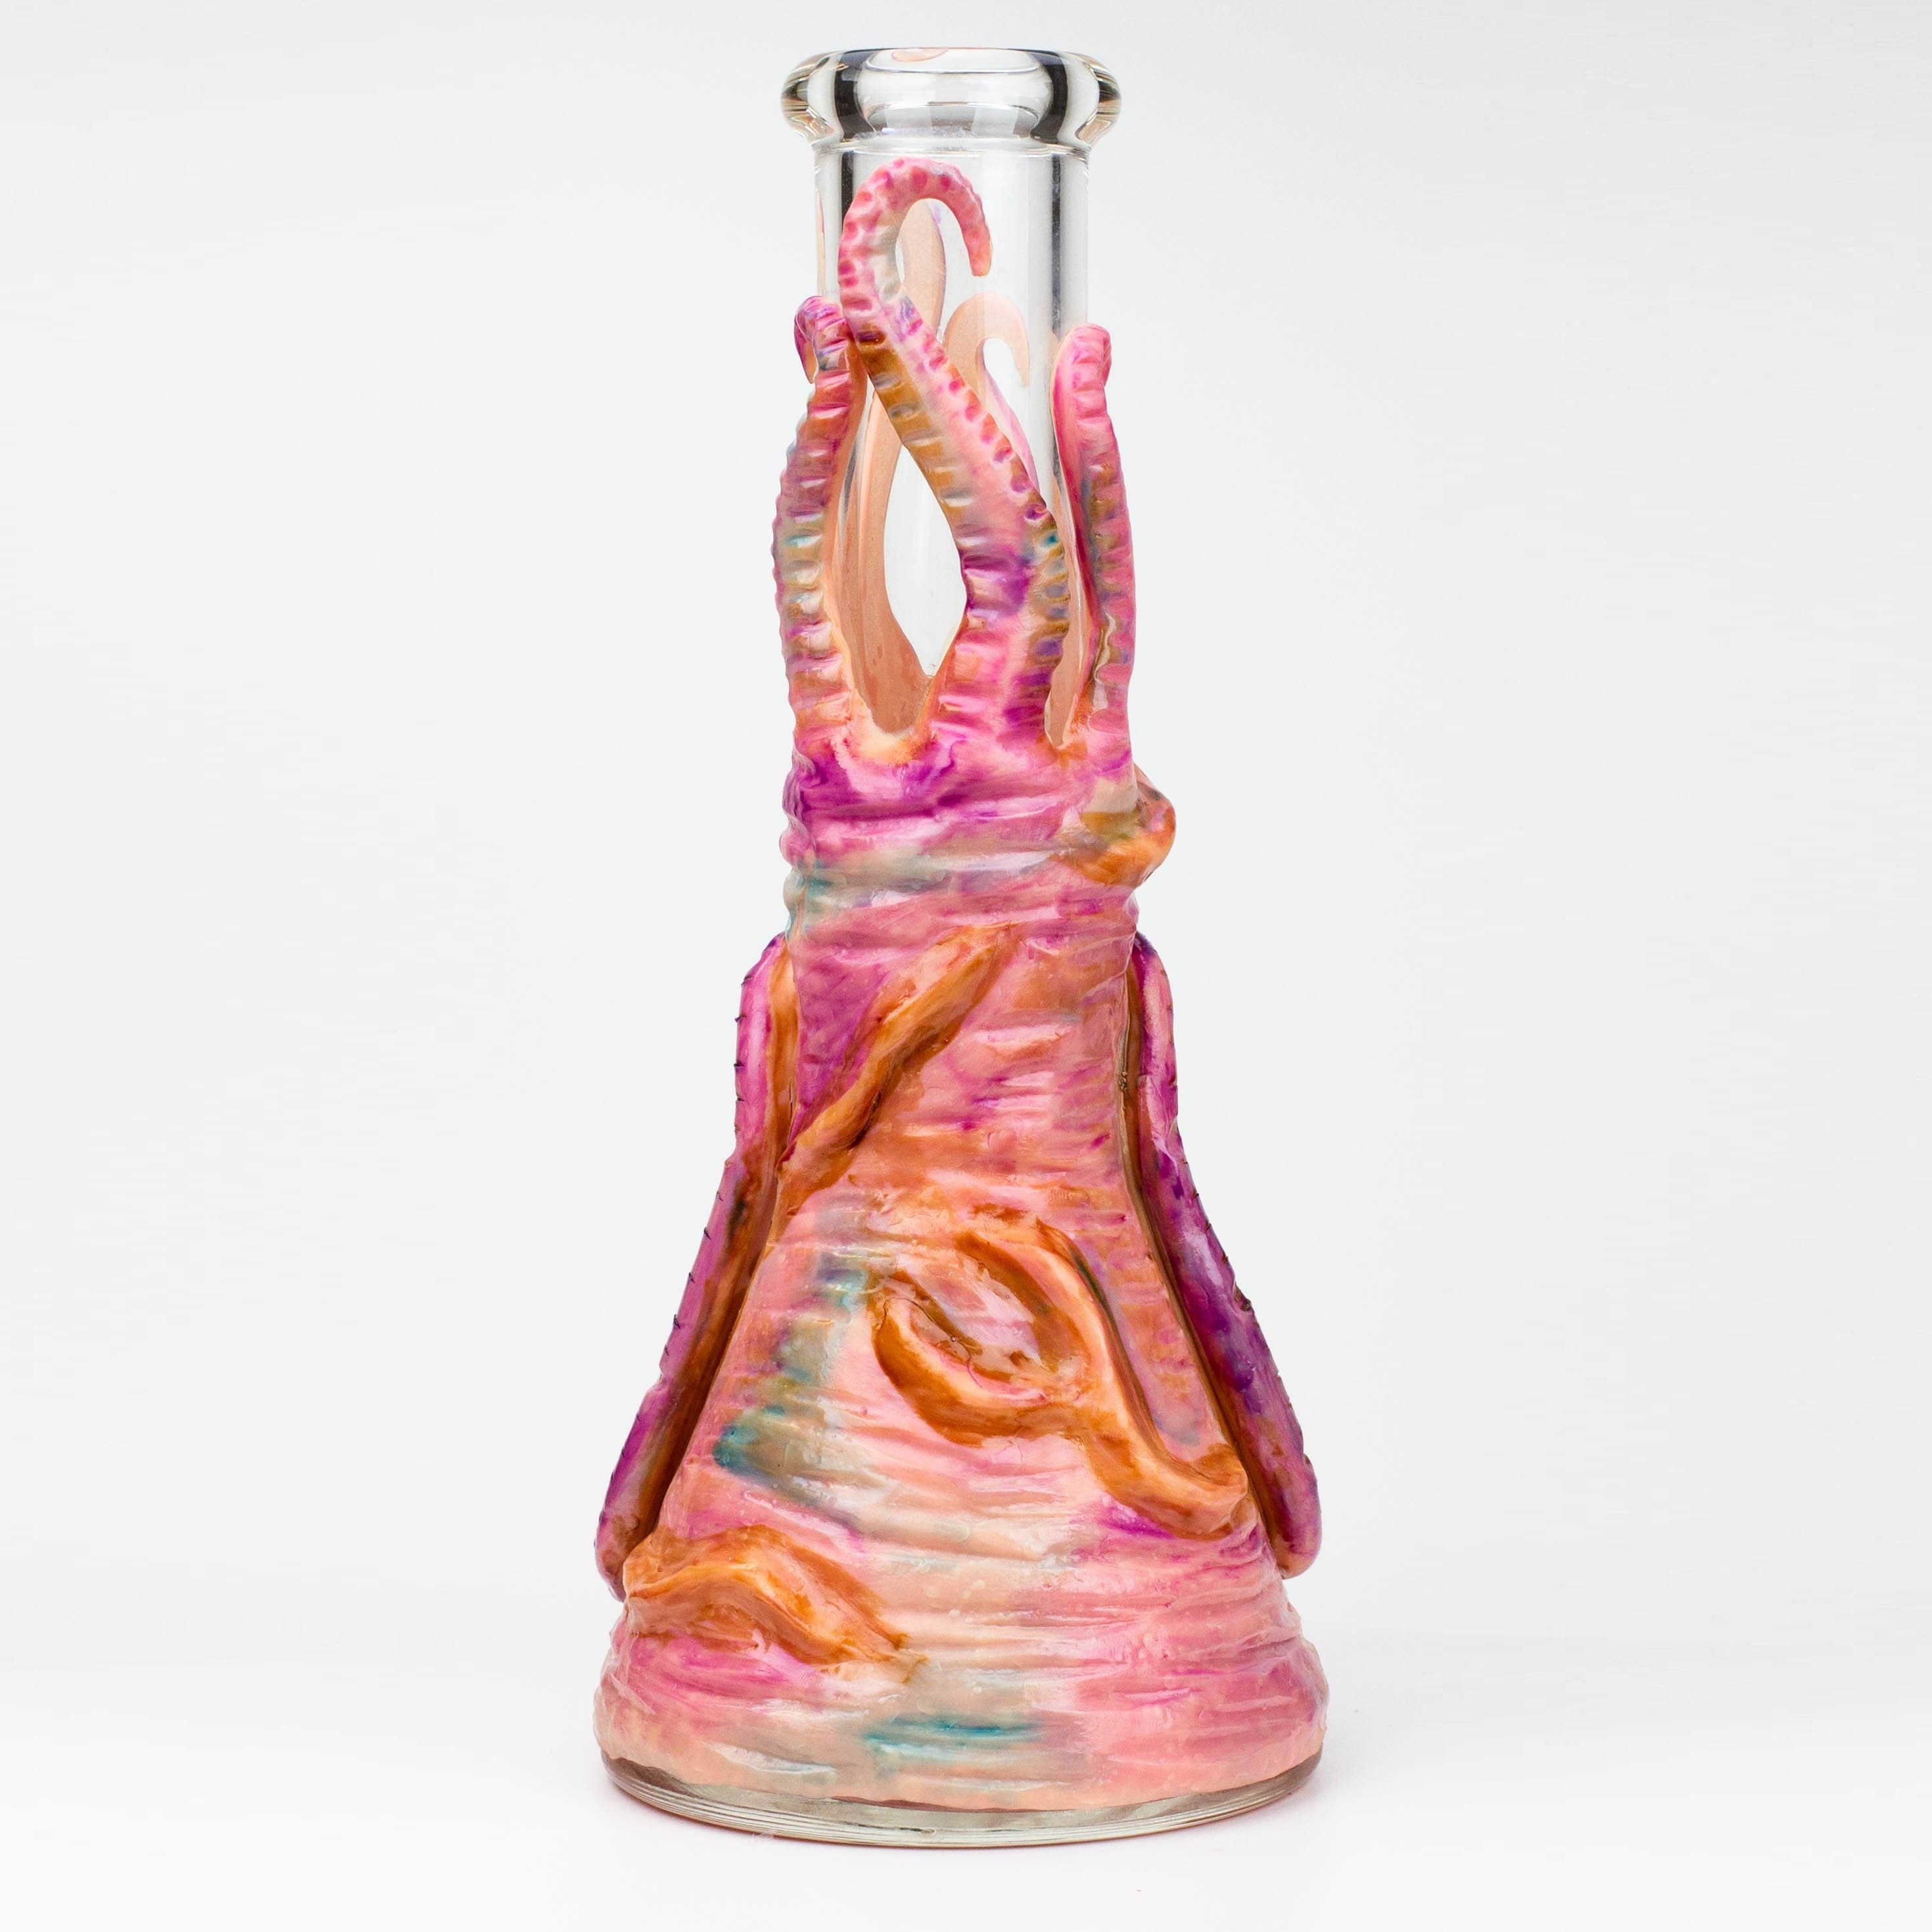 Resin 3D artwork 7mm glass beaker water bong 12.5"_2